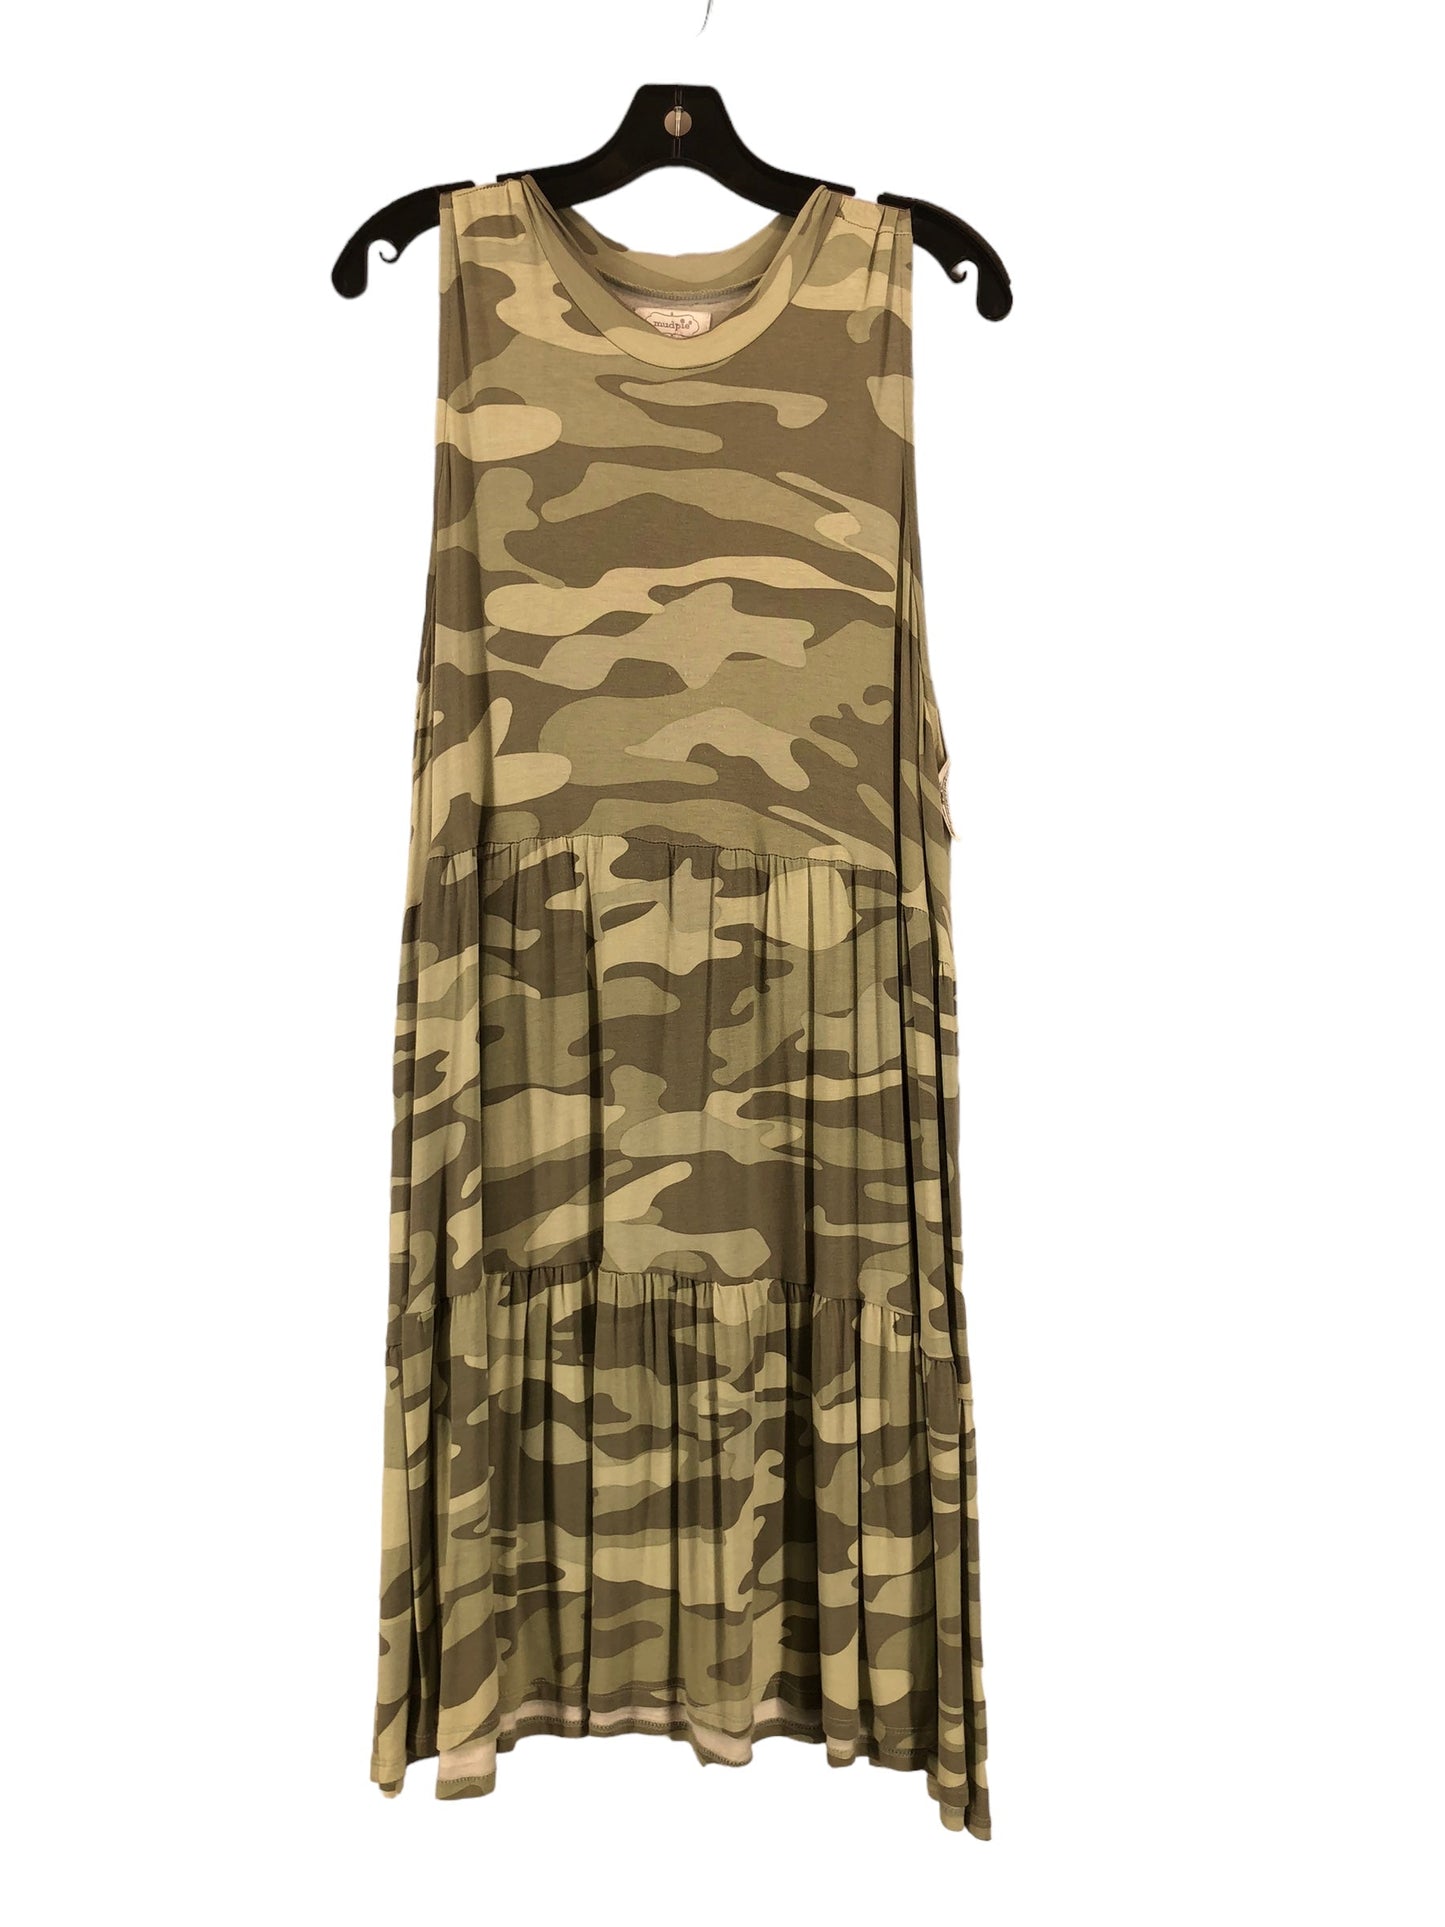 Dress Casual Midi By Mudpie  Size: Xl